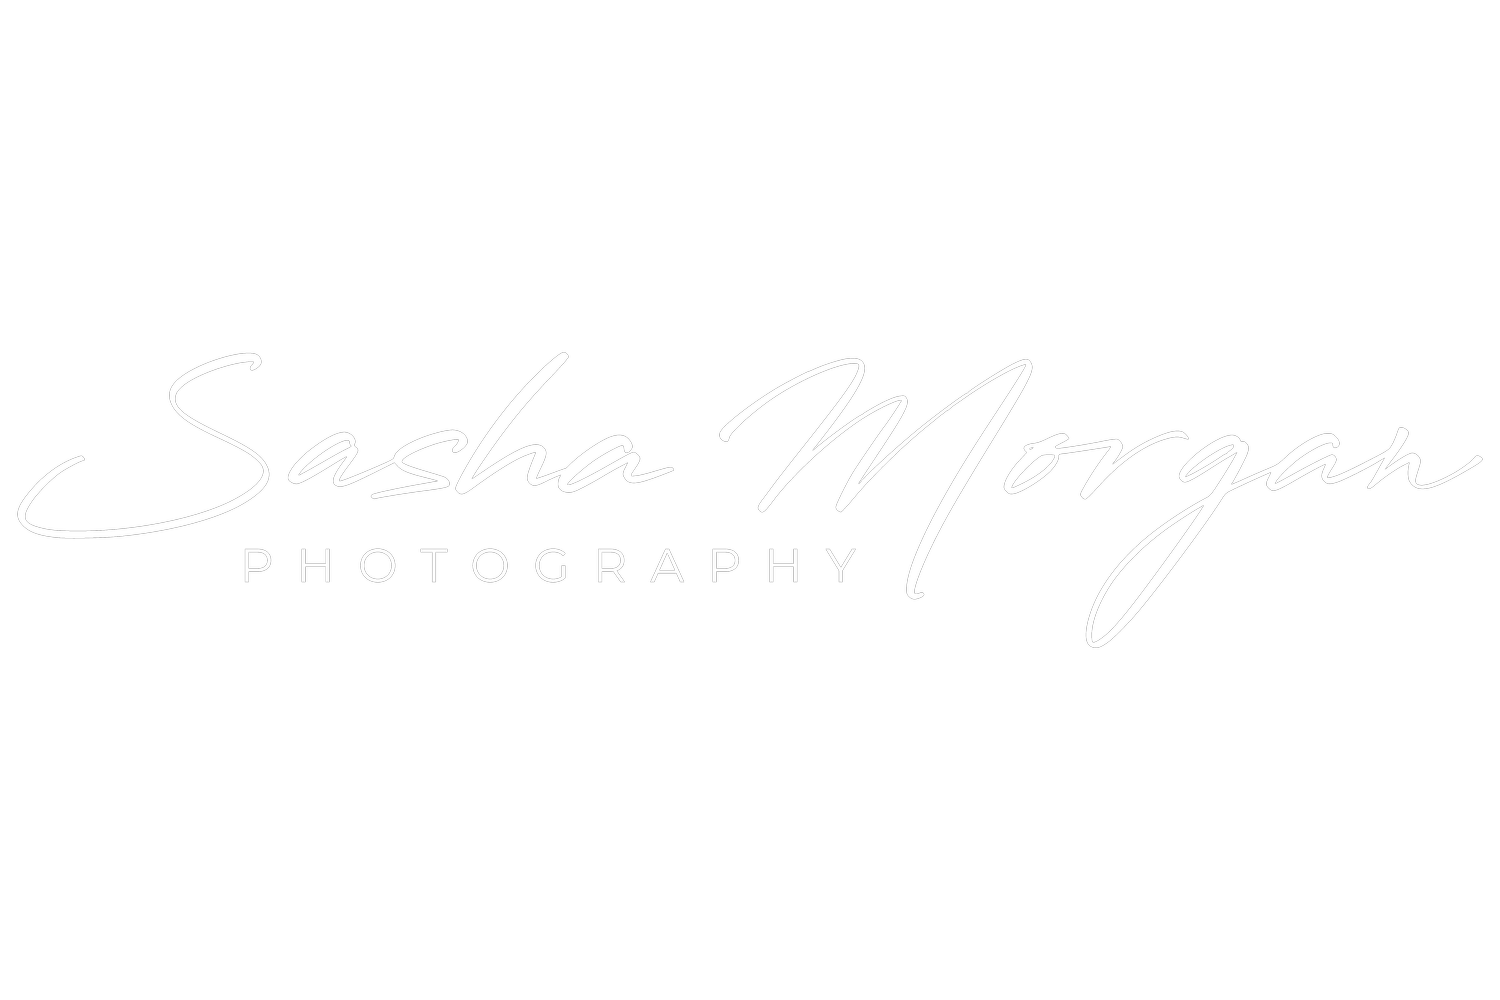 Sasha Morgan Photography